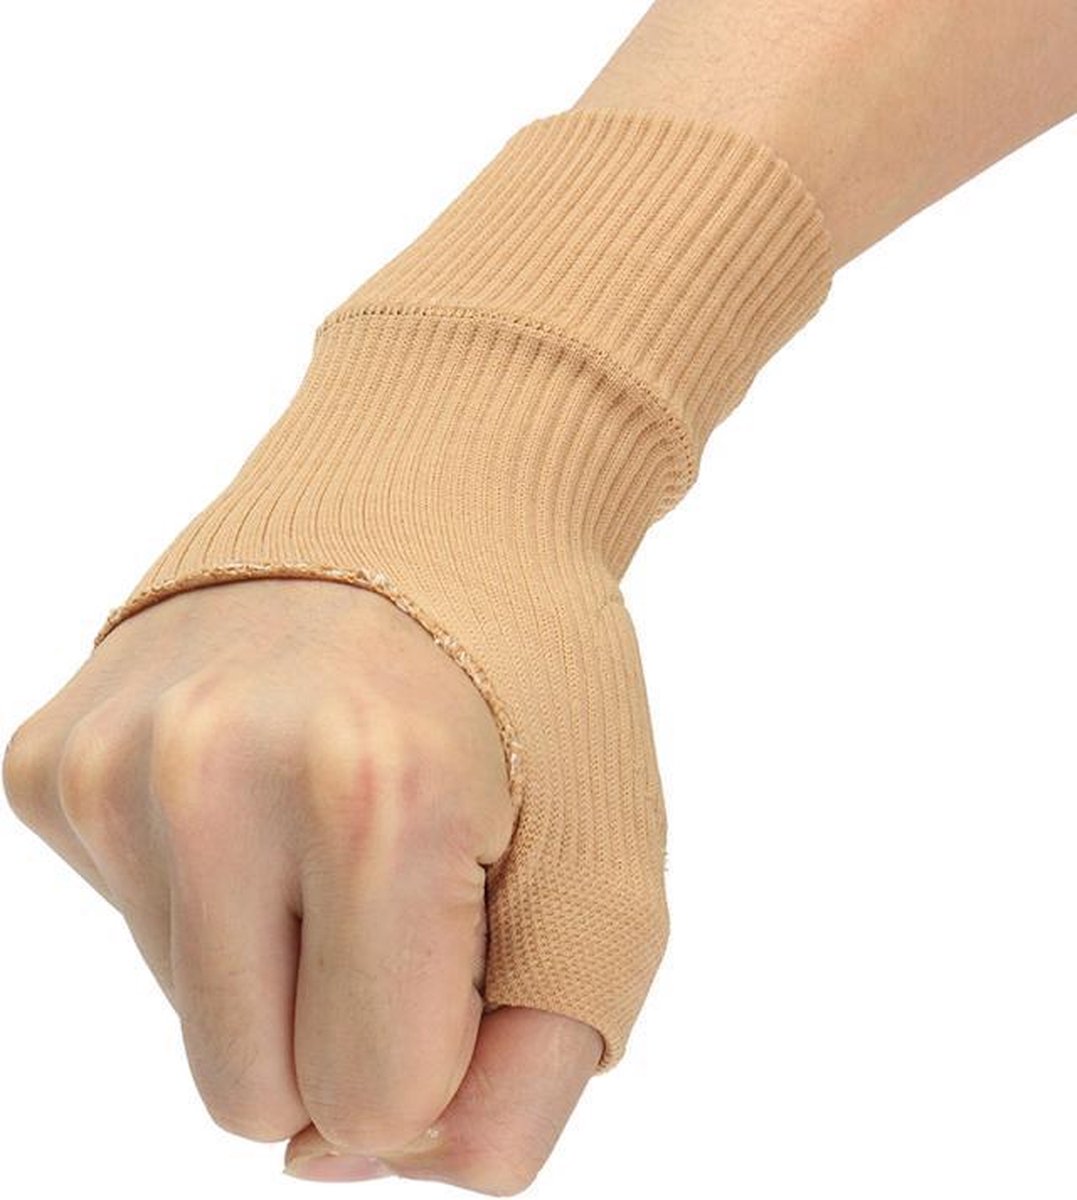 Compressie Handschoenen - Reuma handschoenen - Artrose Handschoenen - Artritis handschoenen - Reuma - Handondersteuning